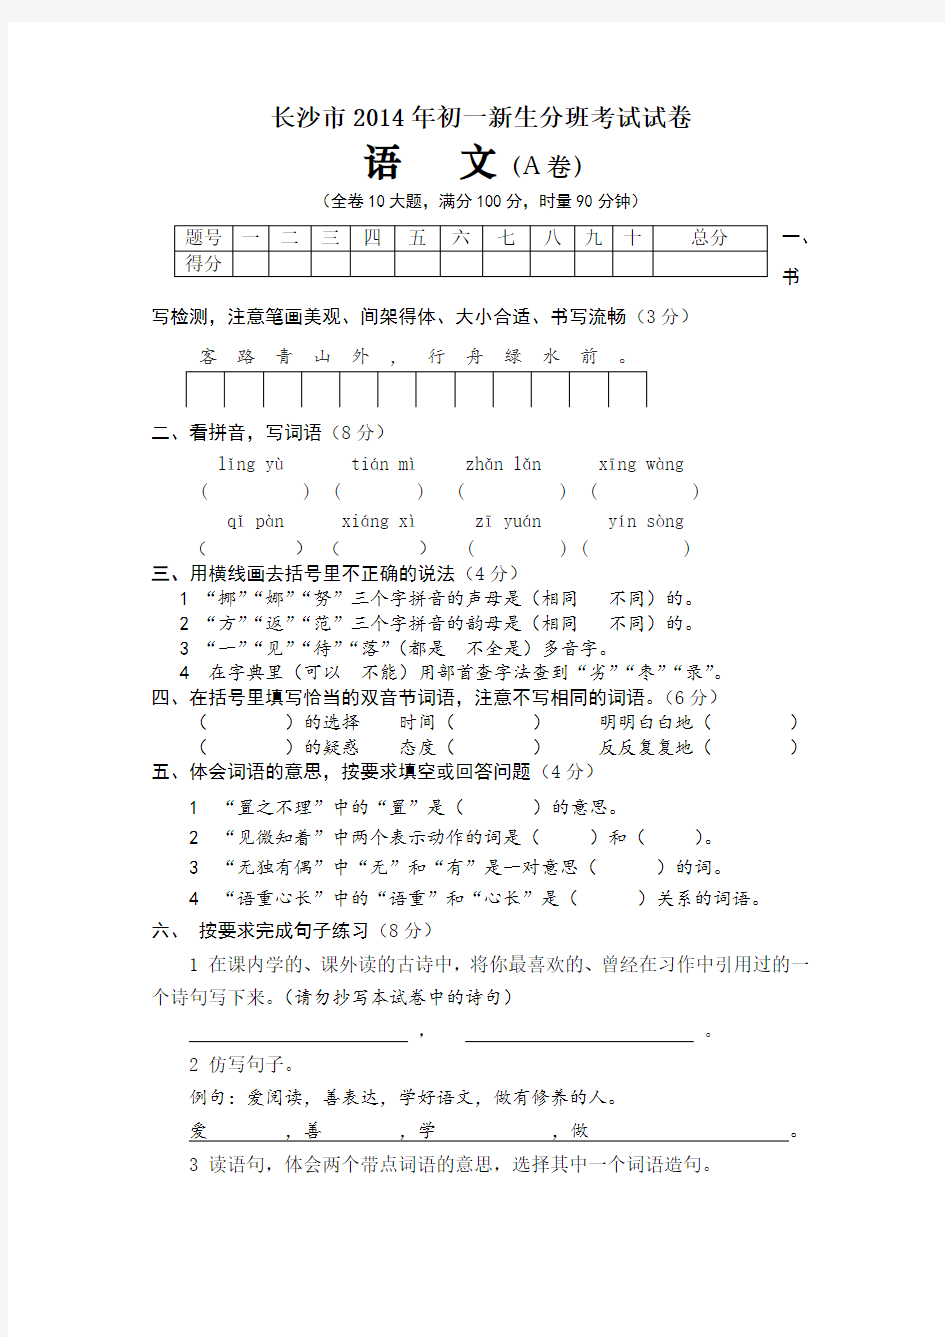 长沙市2014年初一新生分班考试语文试卷 (1)